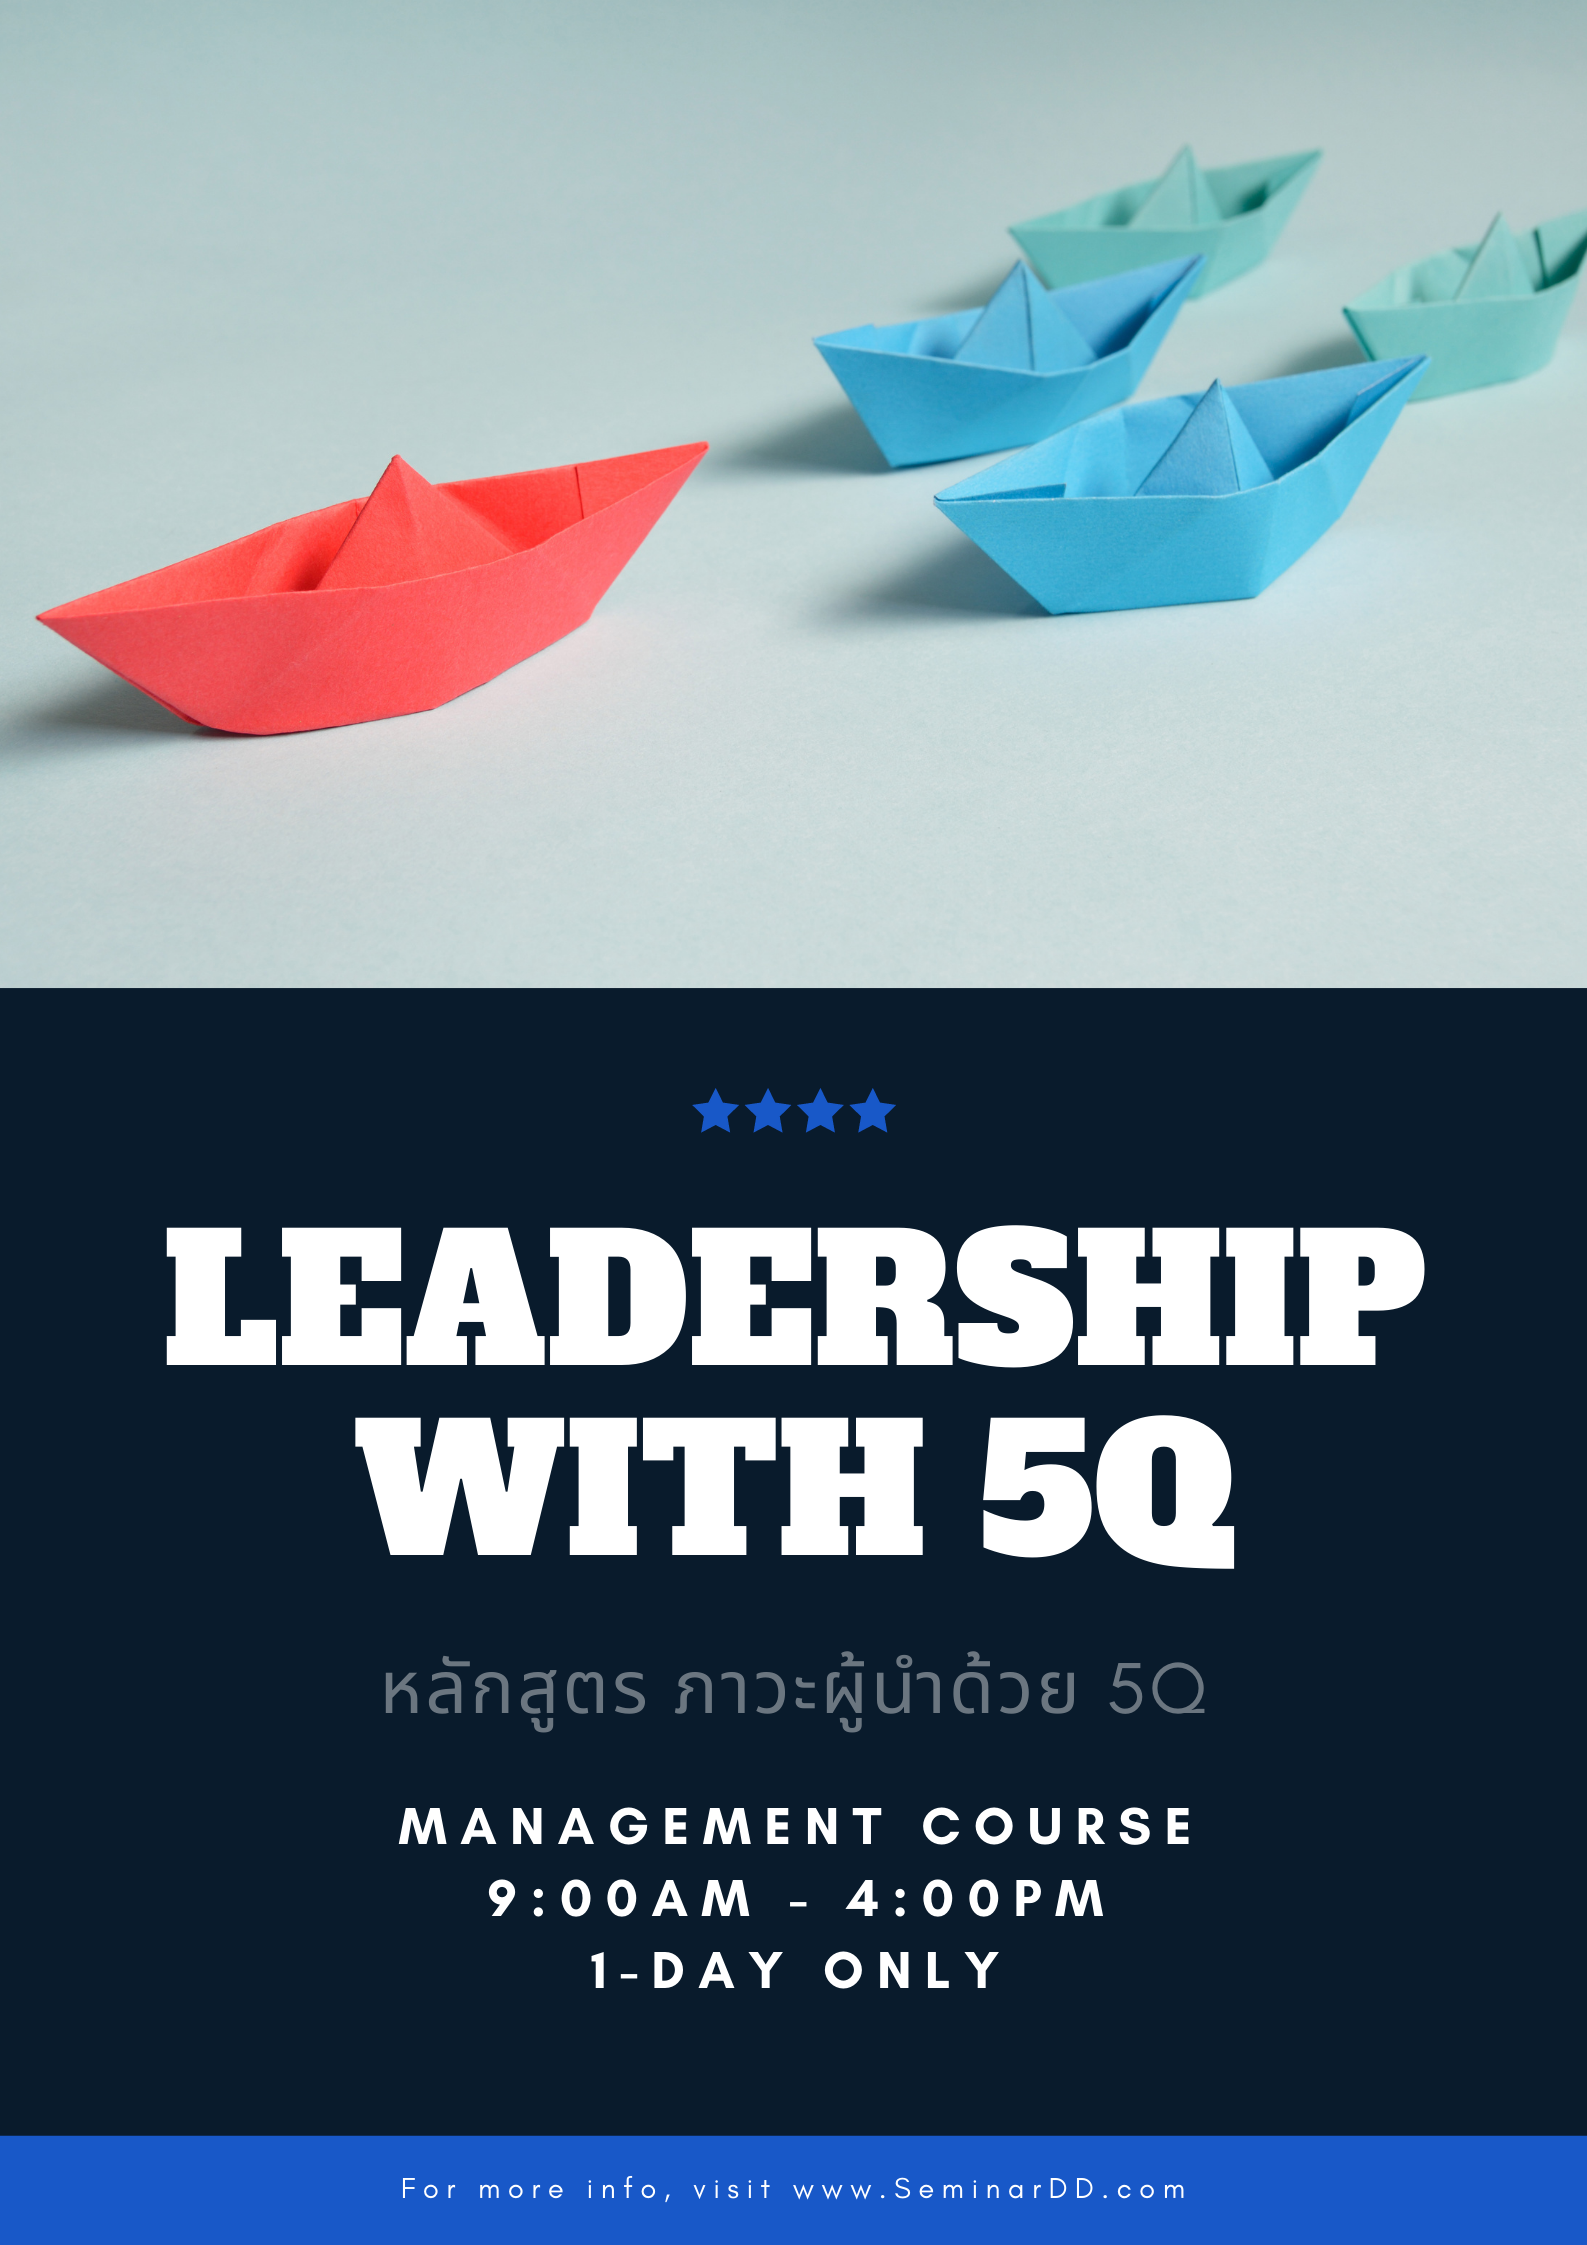 หลักสูตร ภาวะผู้นำ ด้วย 5Q  (Leadership with 5Q)